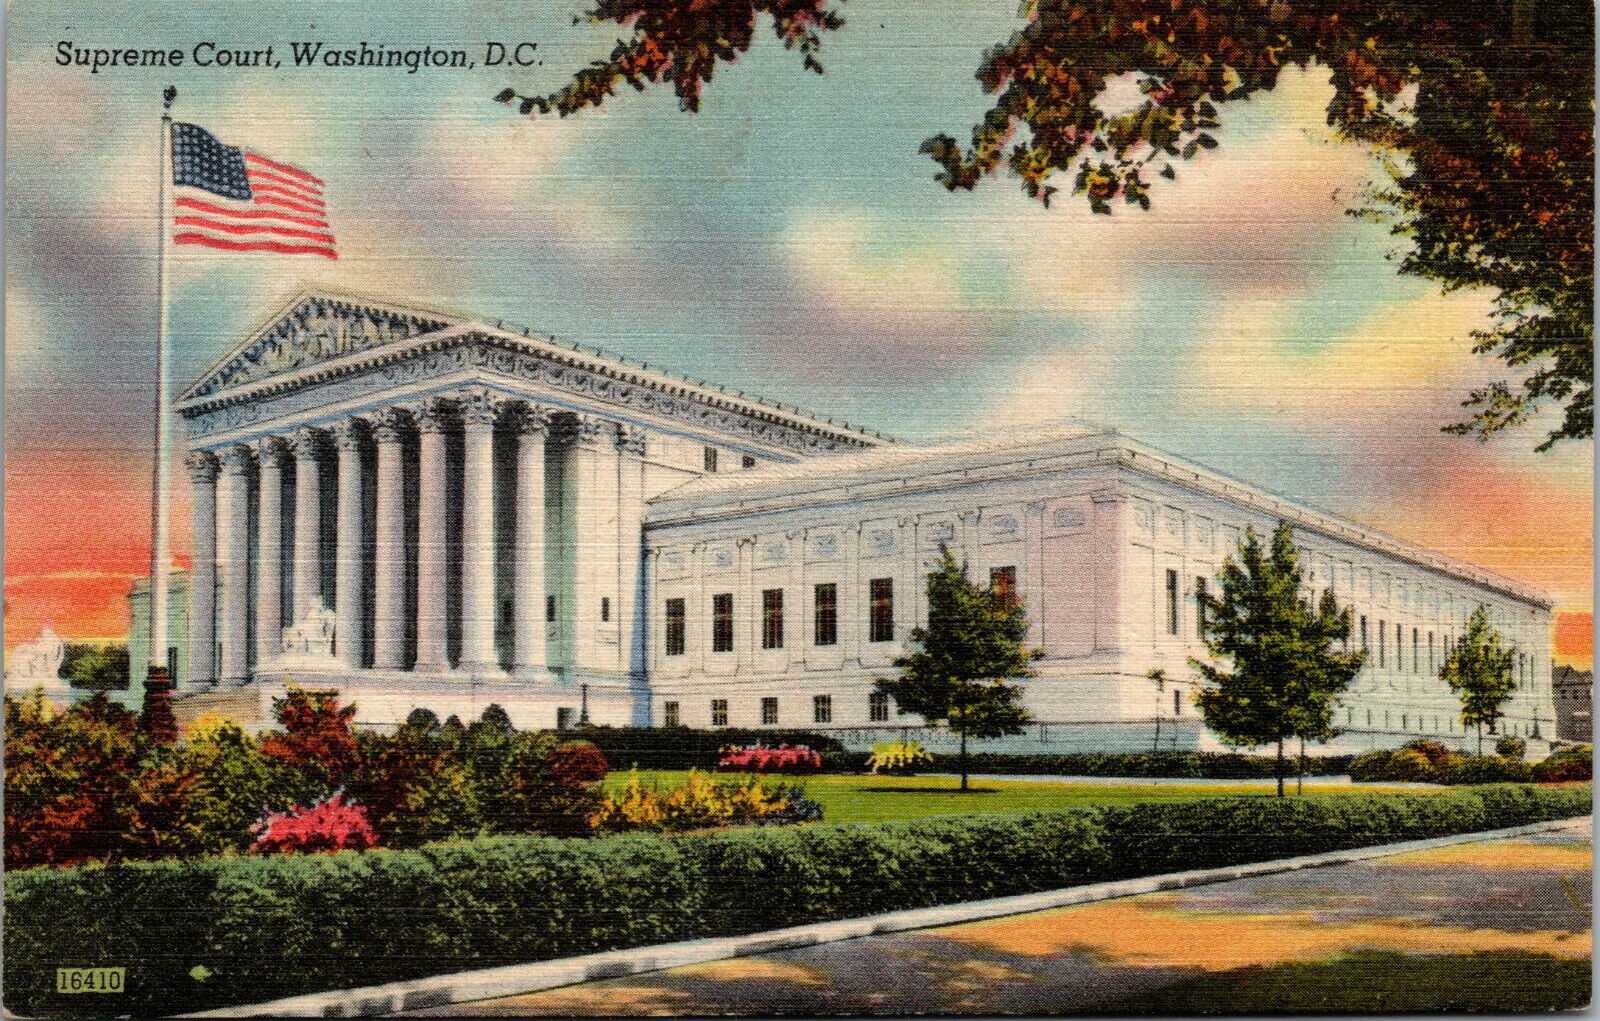 Vtg 1940s Supreme Court Building Washington DC Unused Linen Postcard